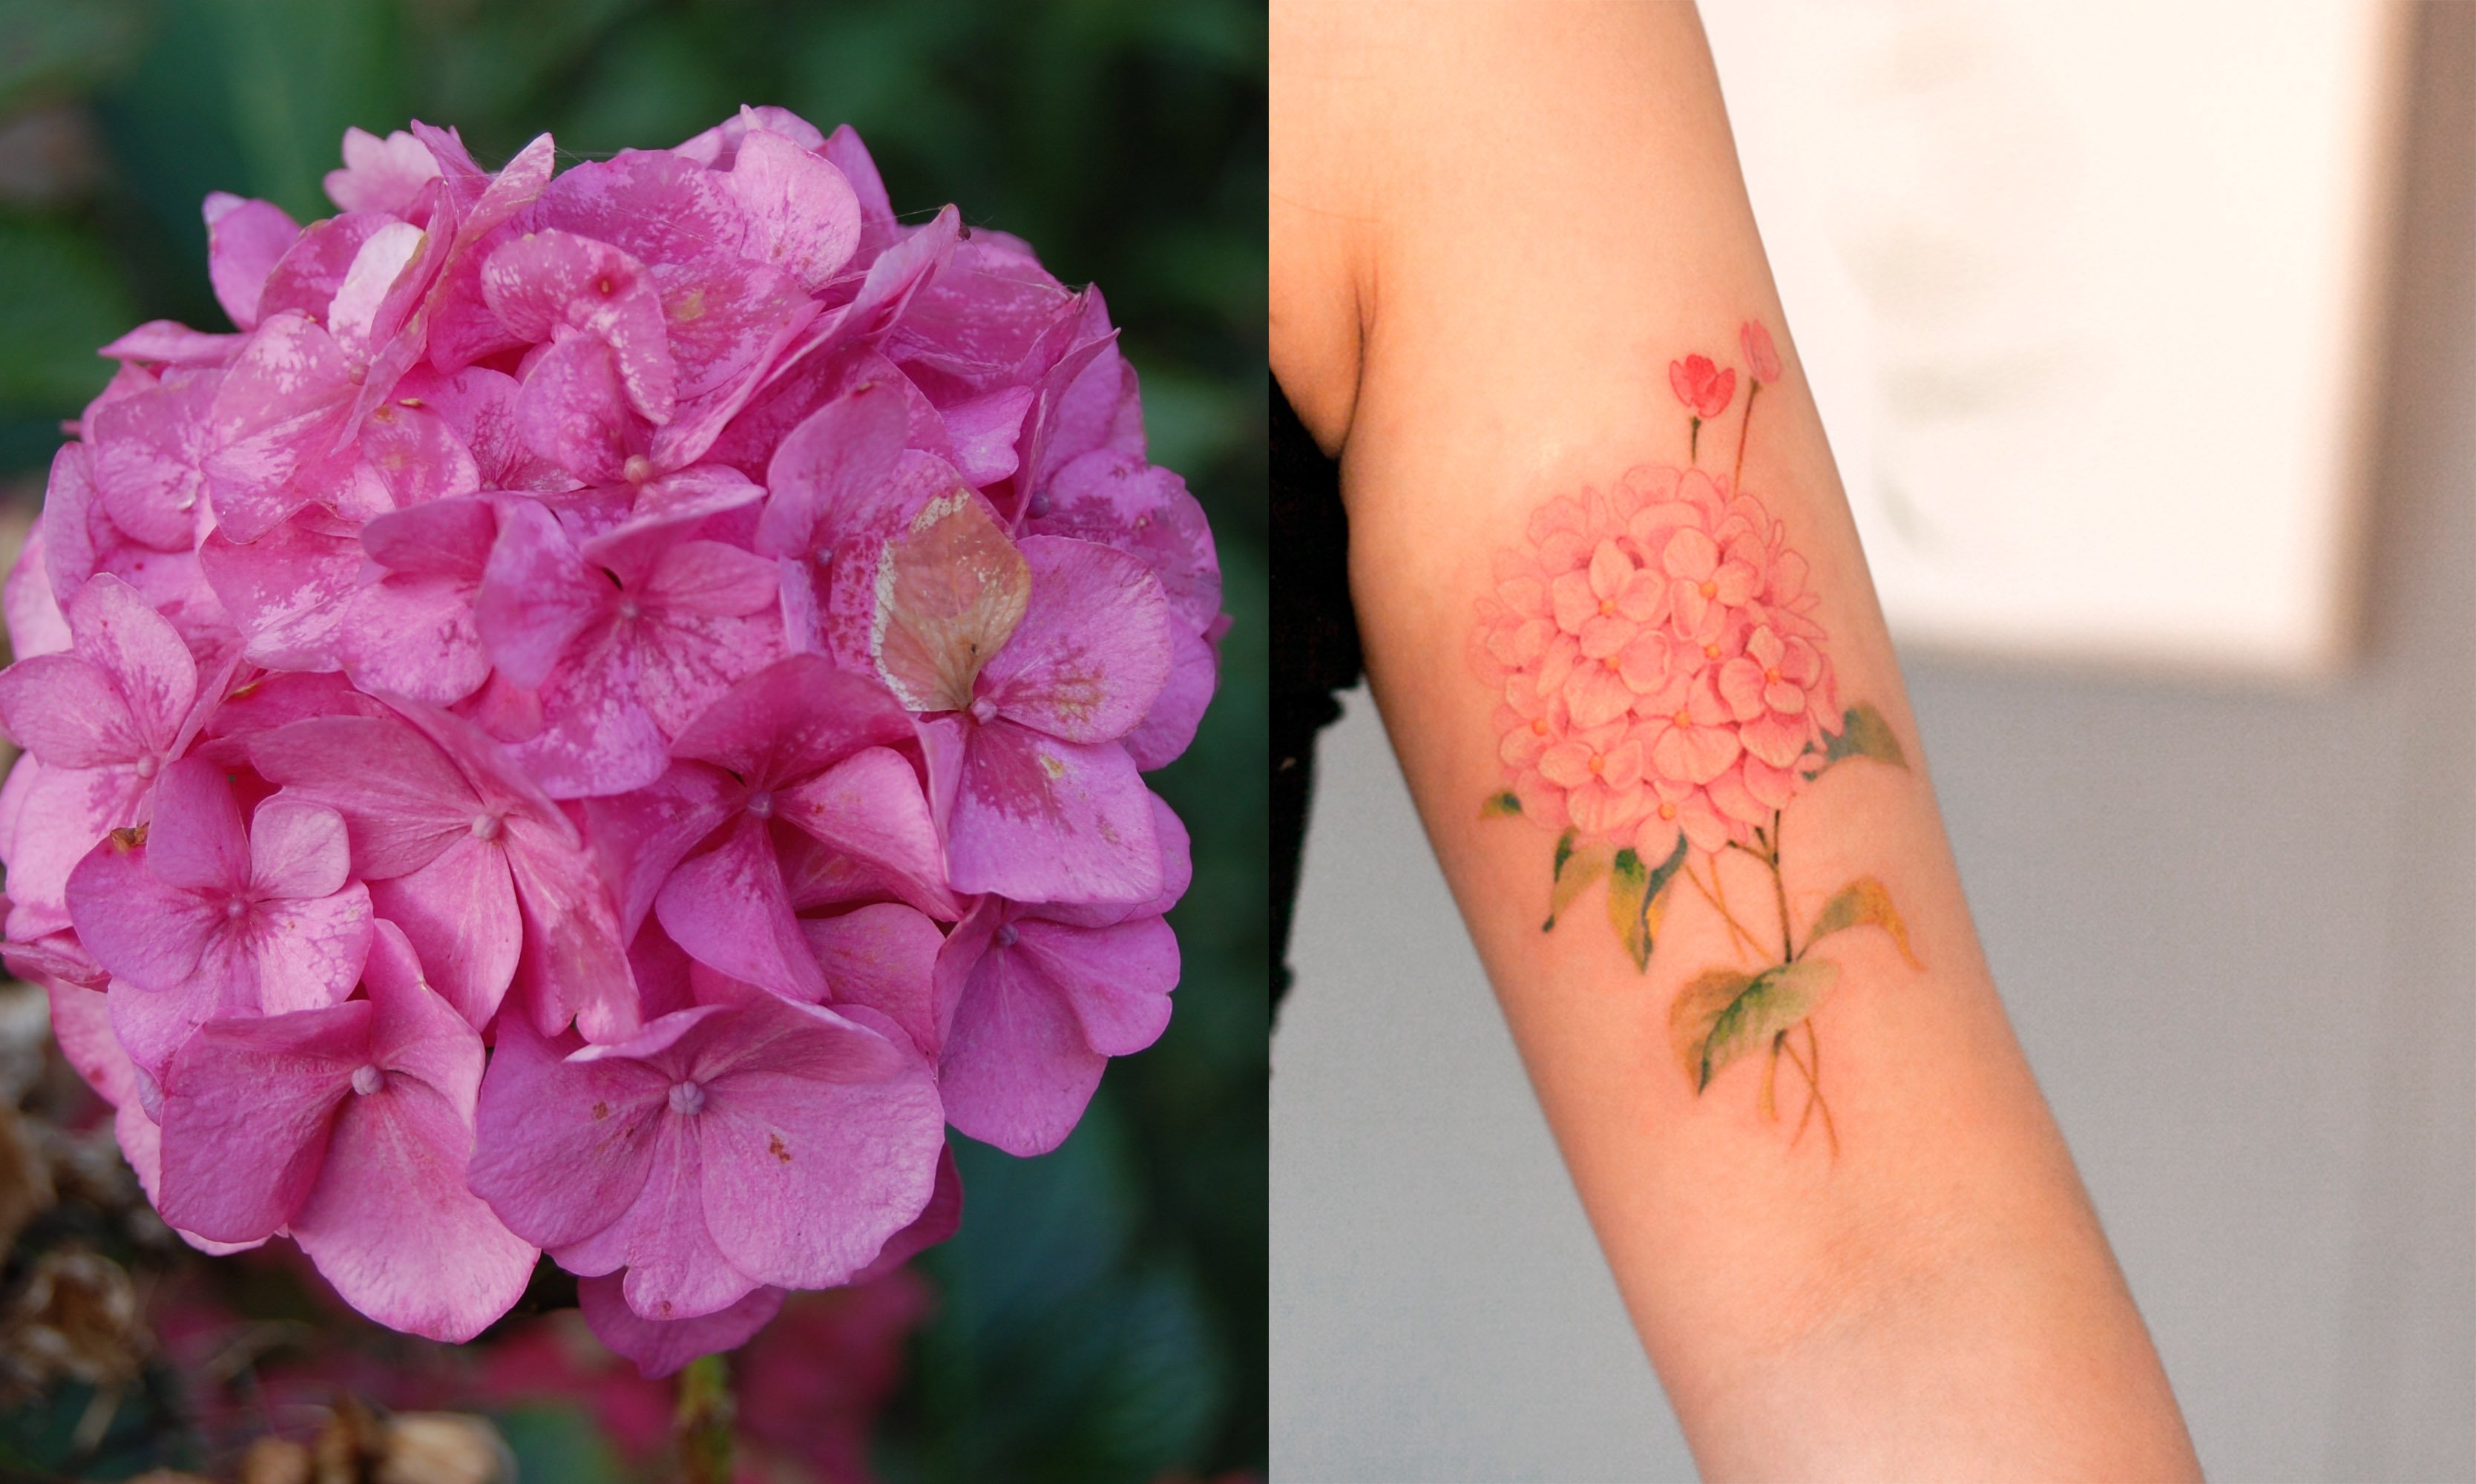 Qué flor deberías tatuarte según tu signo del zodiaco?